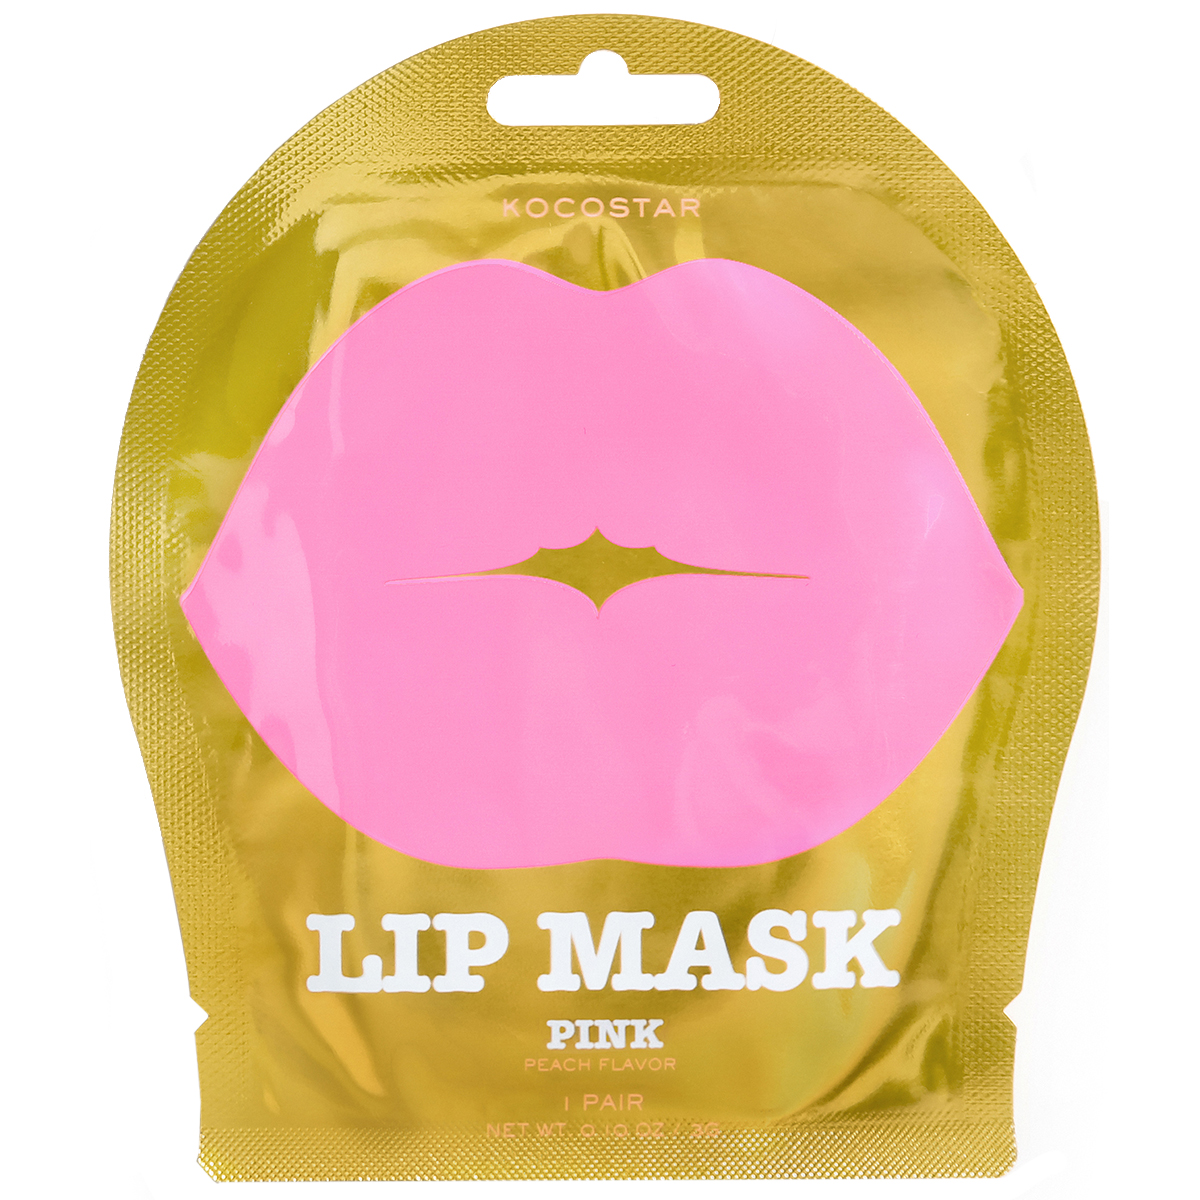 Bilde av Kocostar Lip Mask Pink Peach 1 St